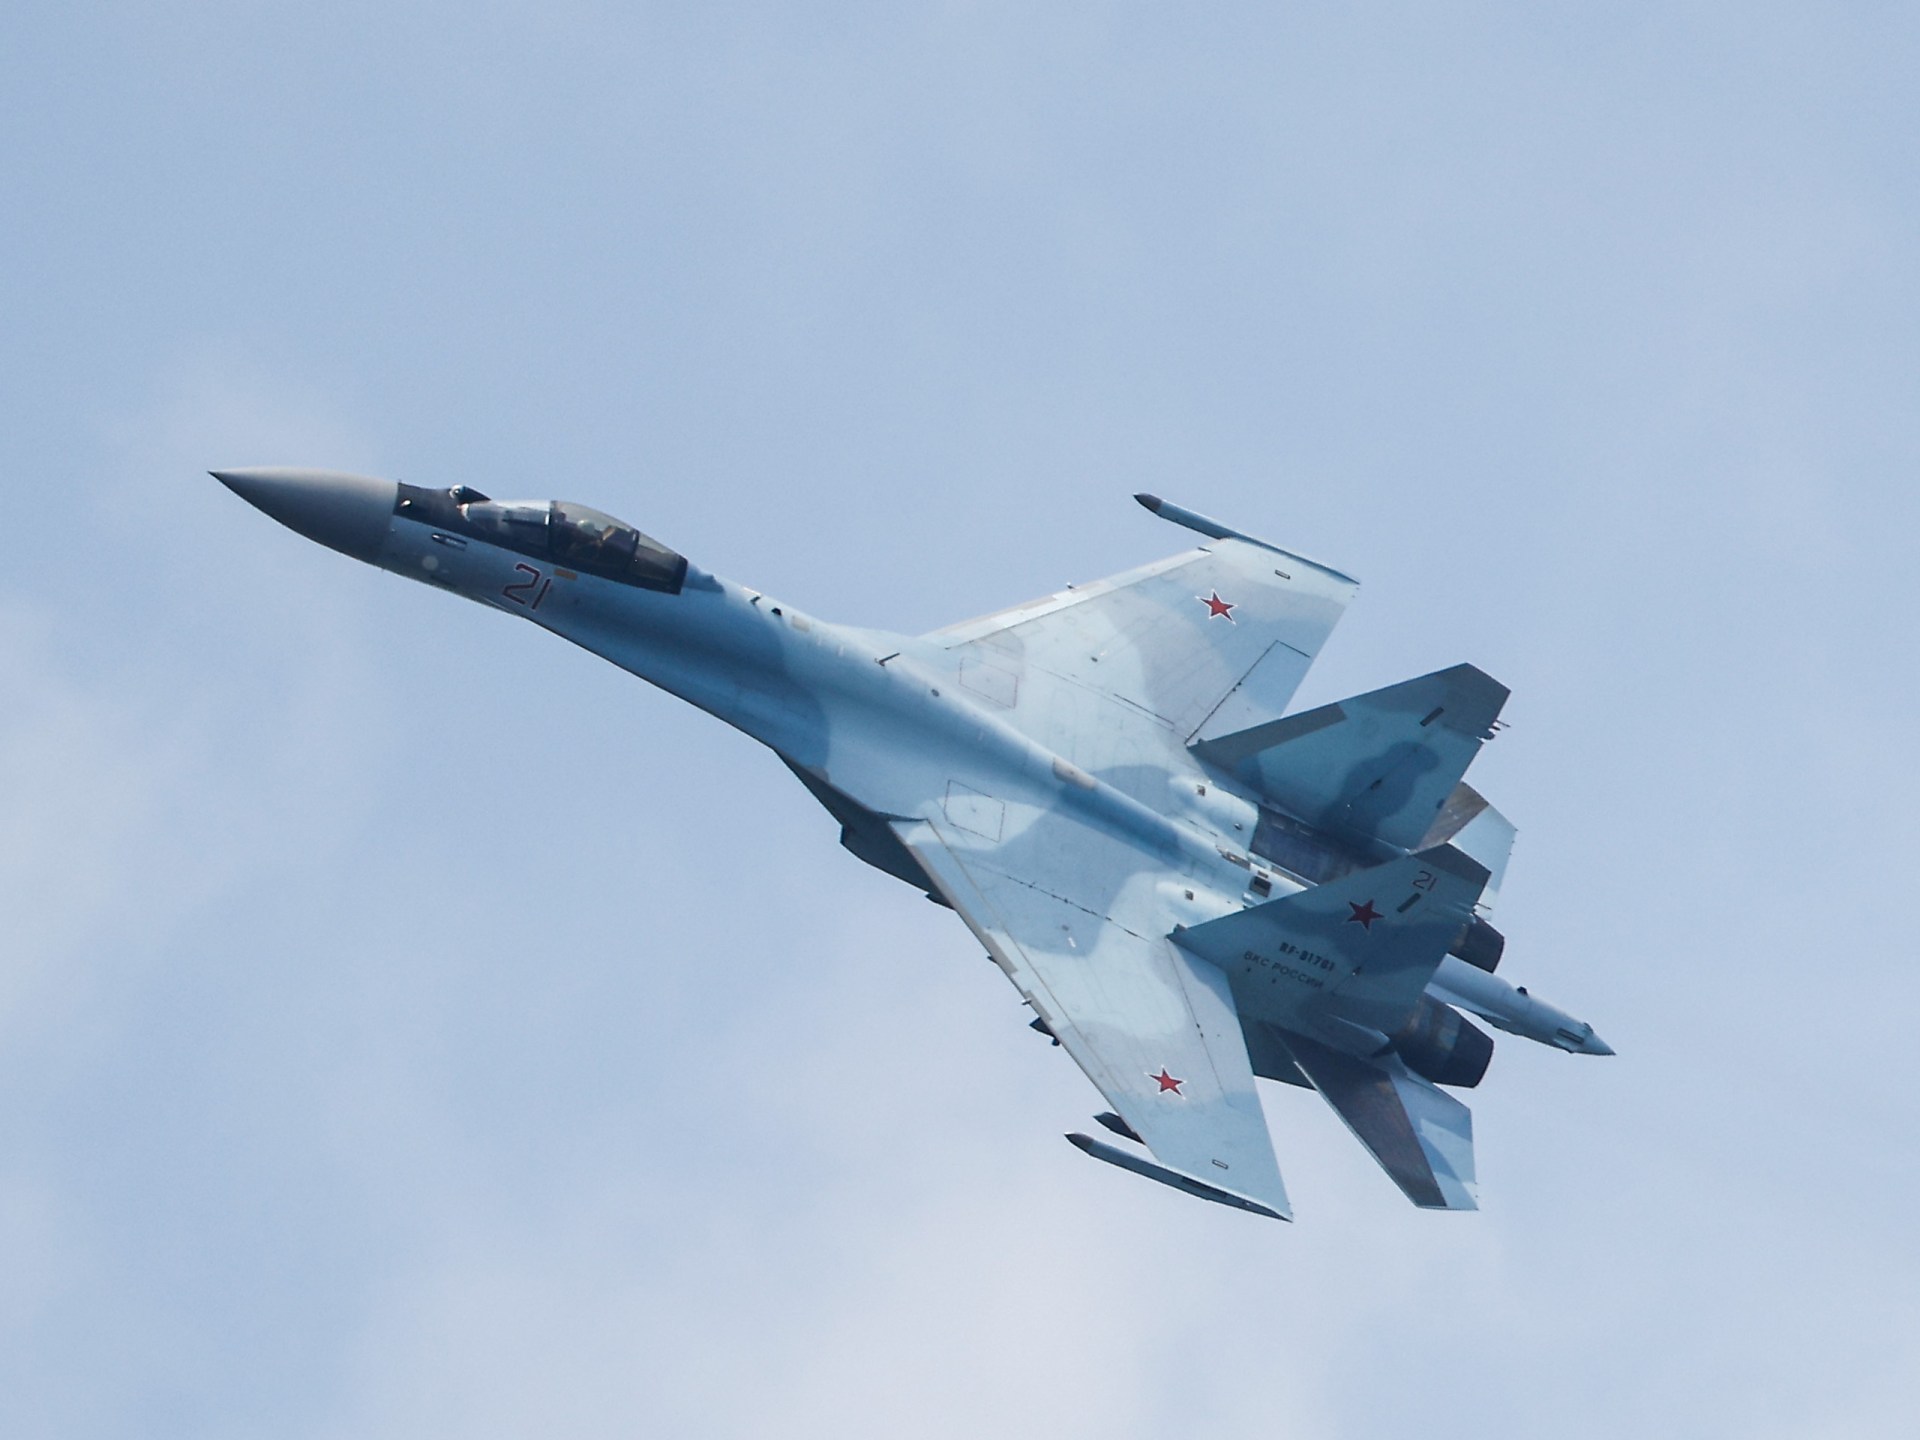 Русия казва, че техният изтребител е излетял, докато американски бомбардировачи B-52 летят над Балтийско море |  конфликтни новини